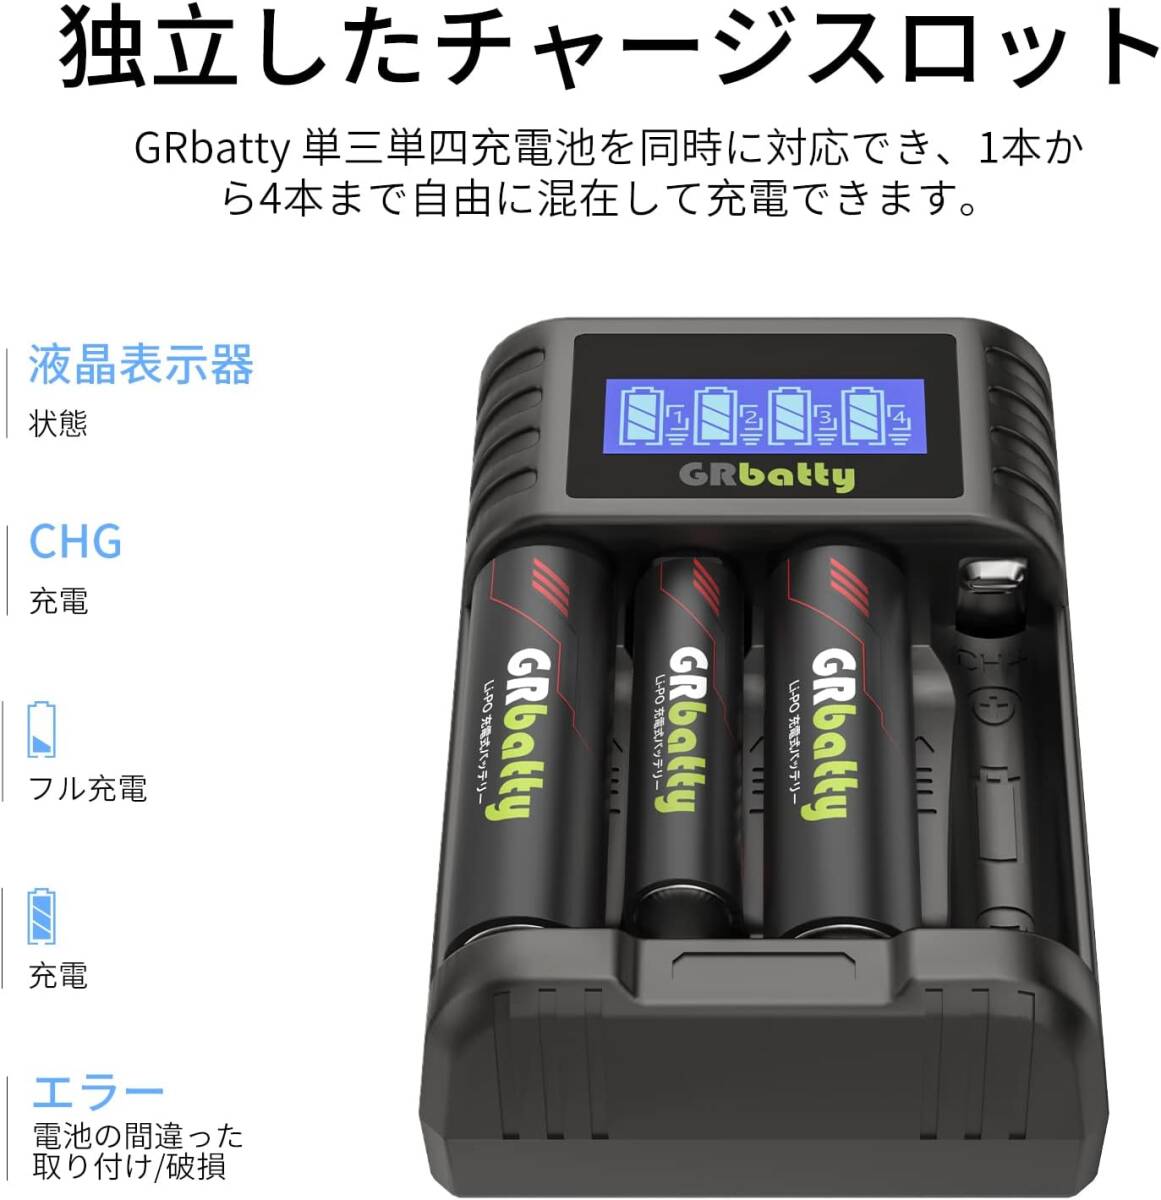 515 зарядное устройство + одиночный 3 форма lithium батарейка *4 GRbatty lithium одиночный 3 перезаряжаемая батарея одиночный 3 форма зарядное устройство в комплекте зарядное устройство в комплекте жидкокристаллический экран 4 слот зарядка 